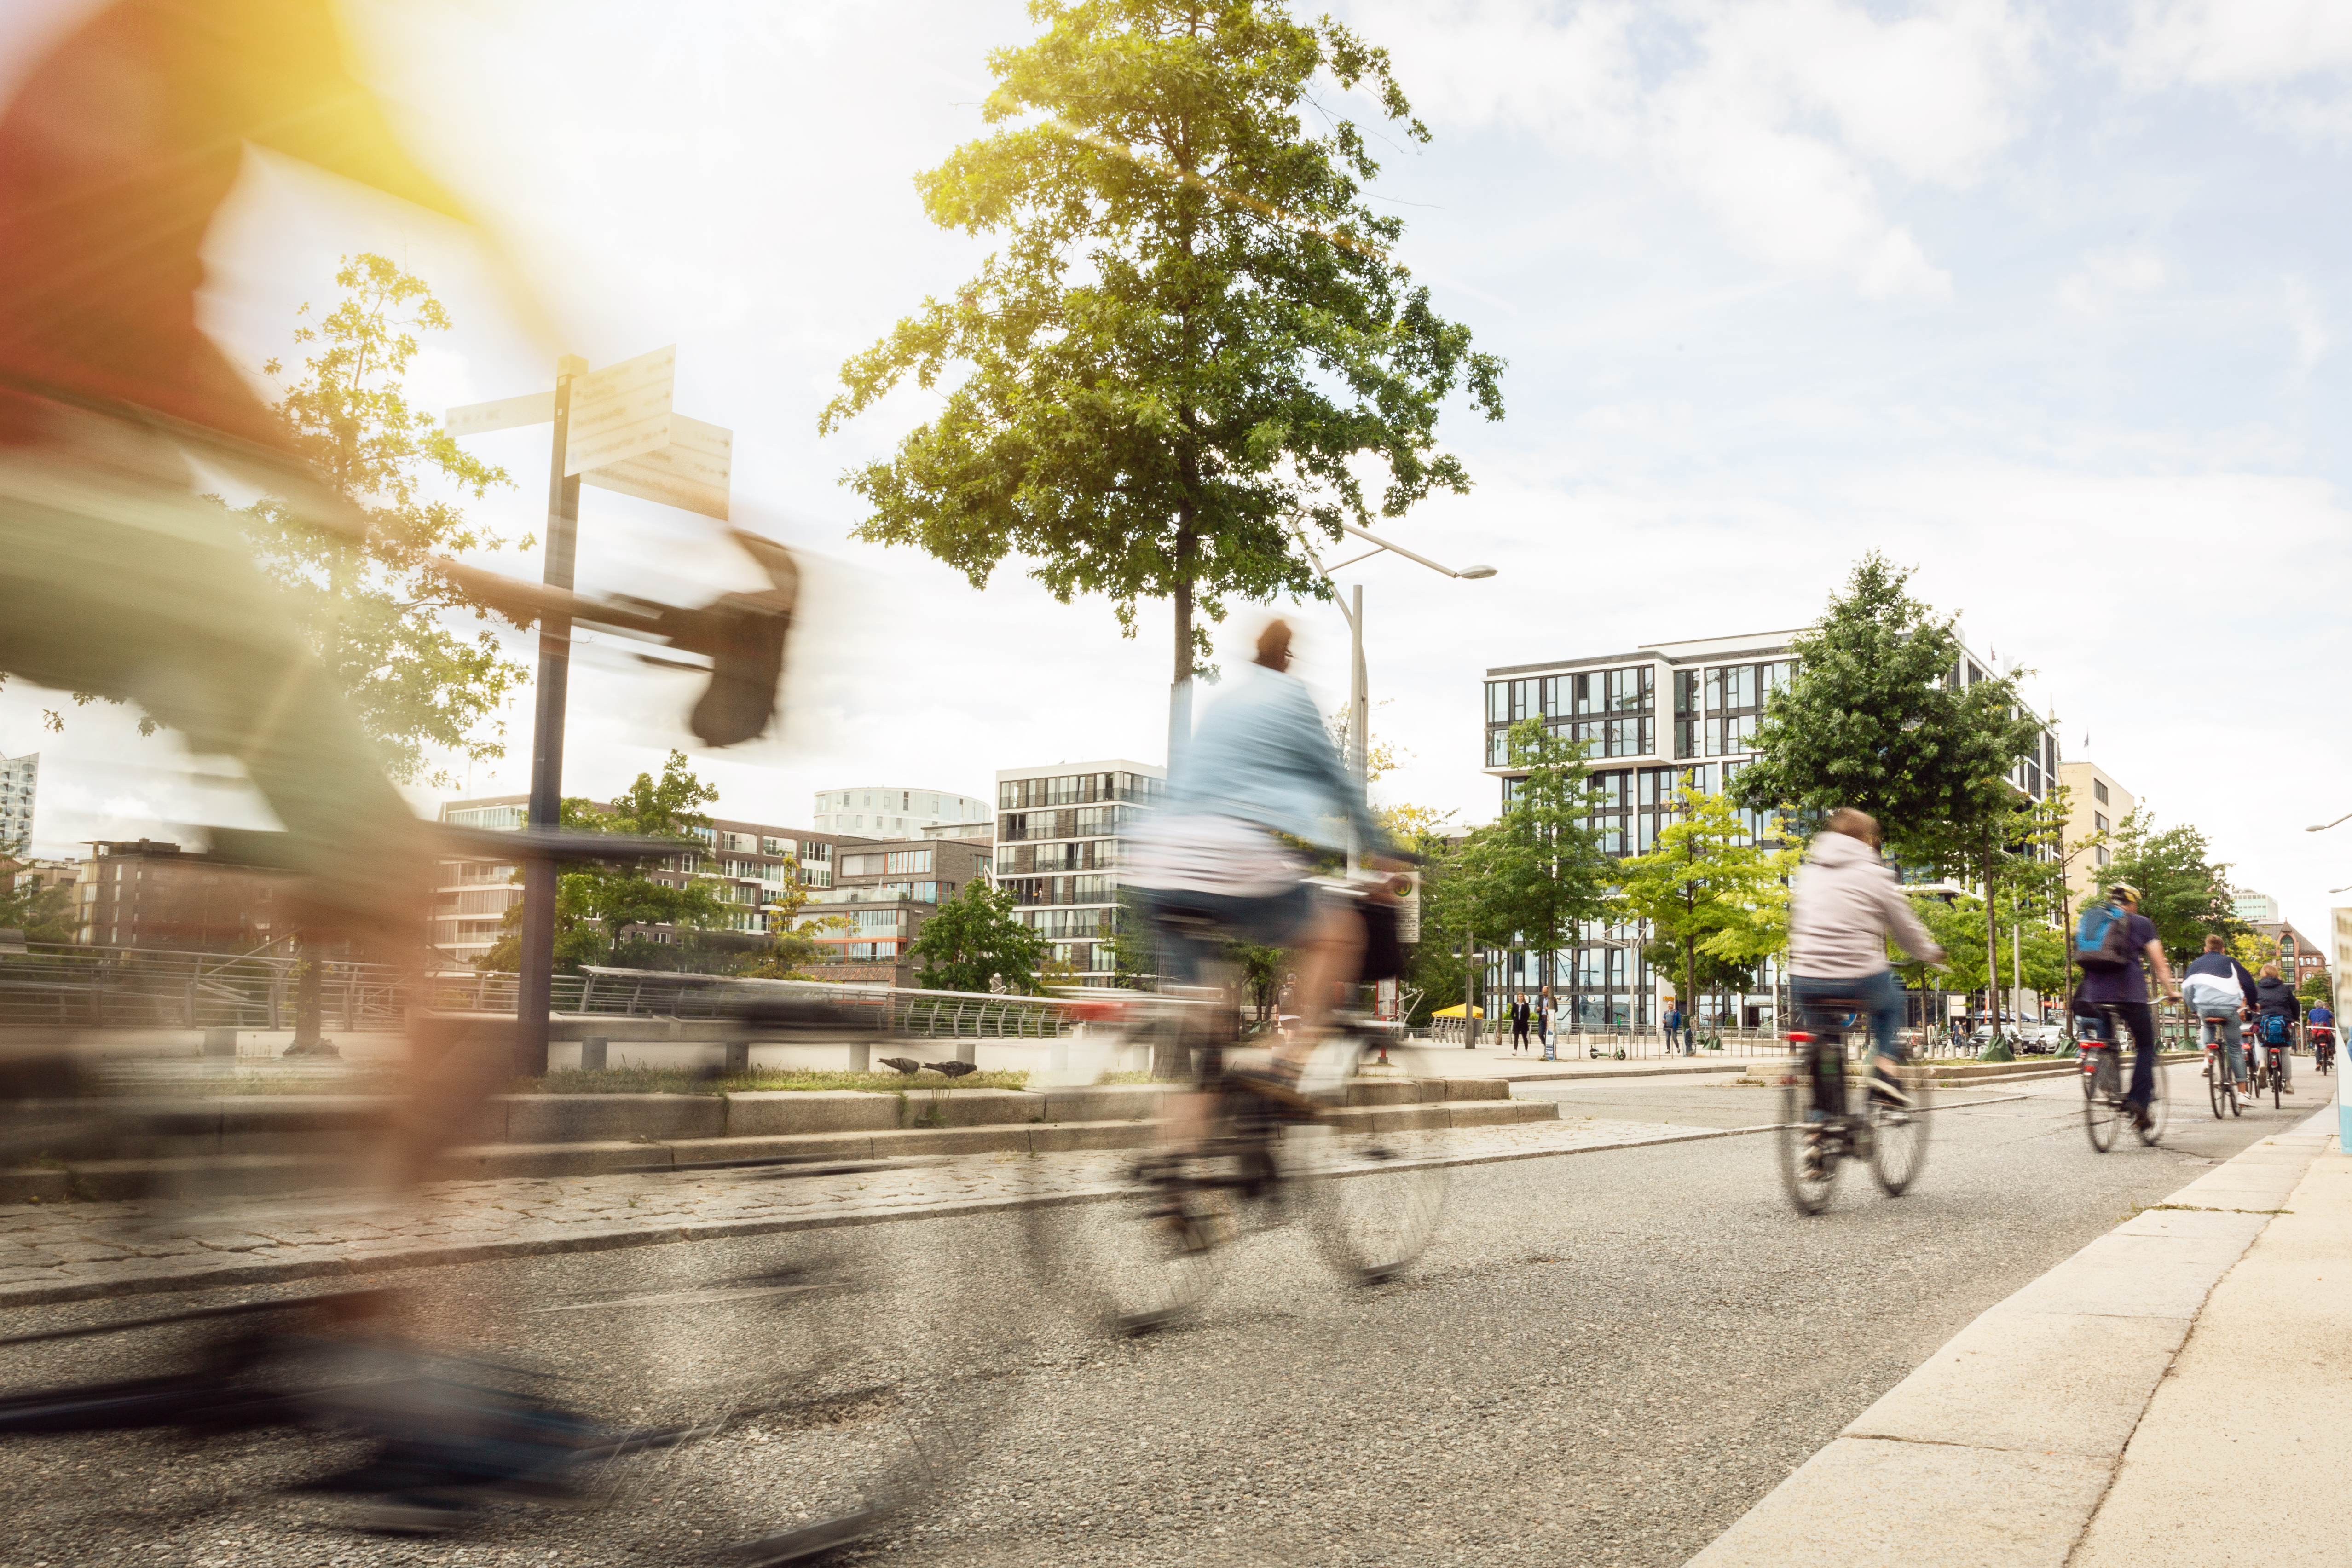 Wohnungen mit sicheren Fahrradstellplätzen in Köln und Berlin: WVM Immobilien
				